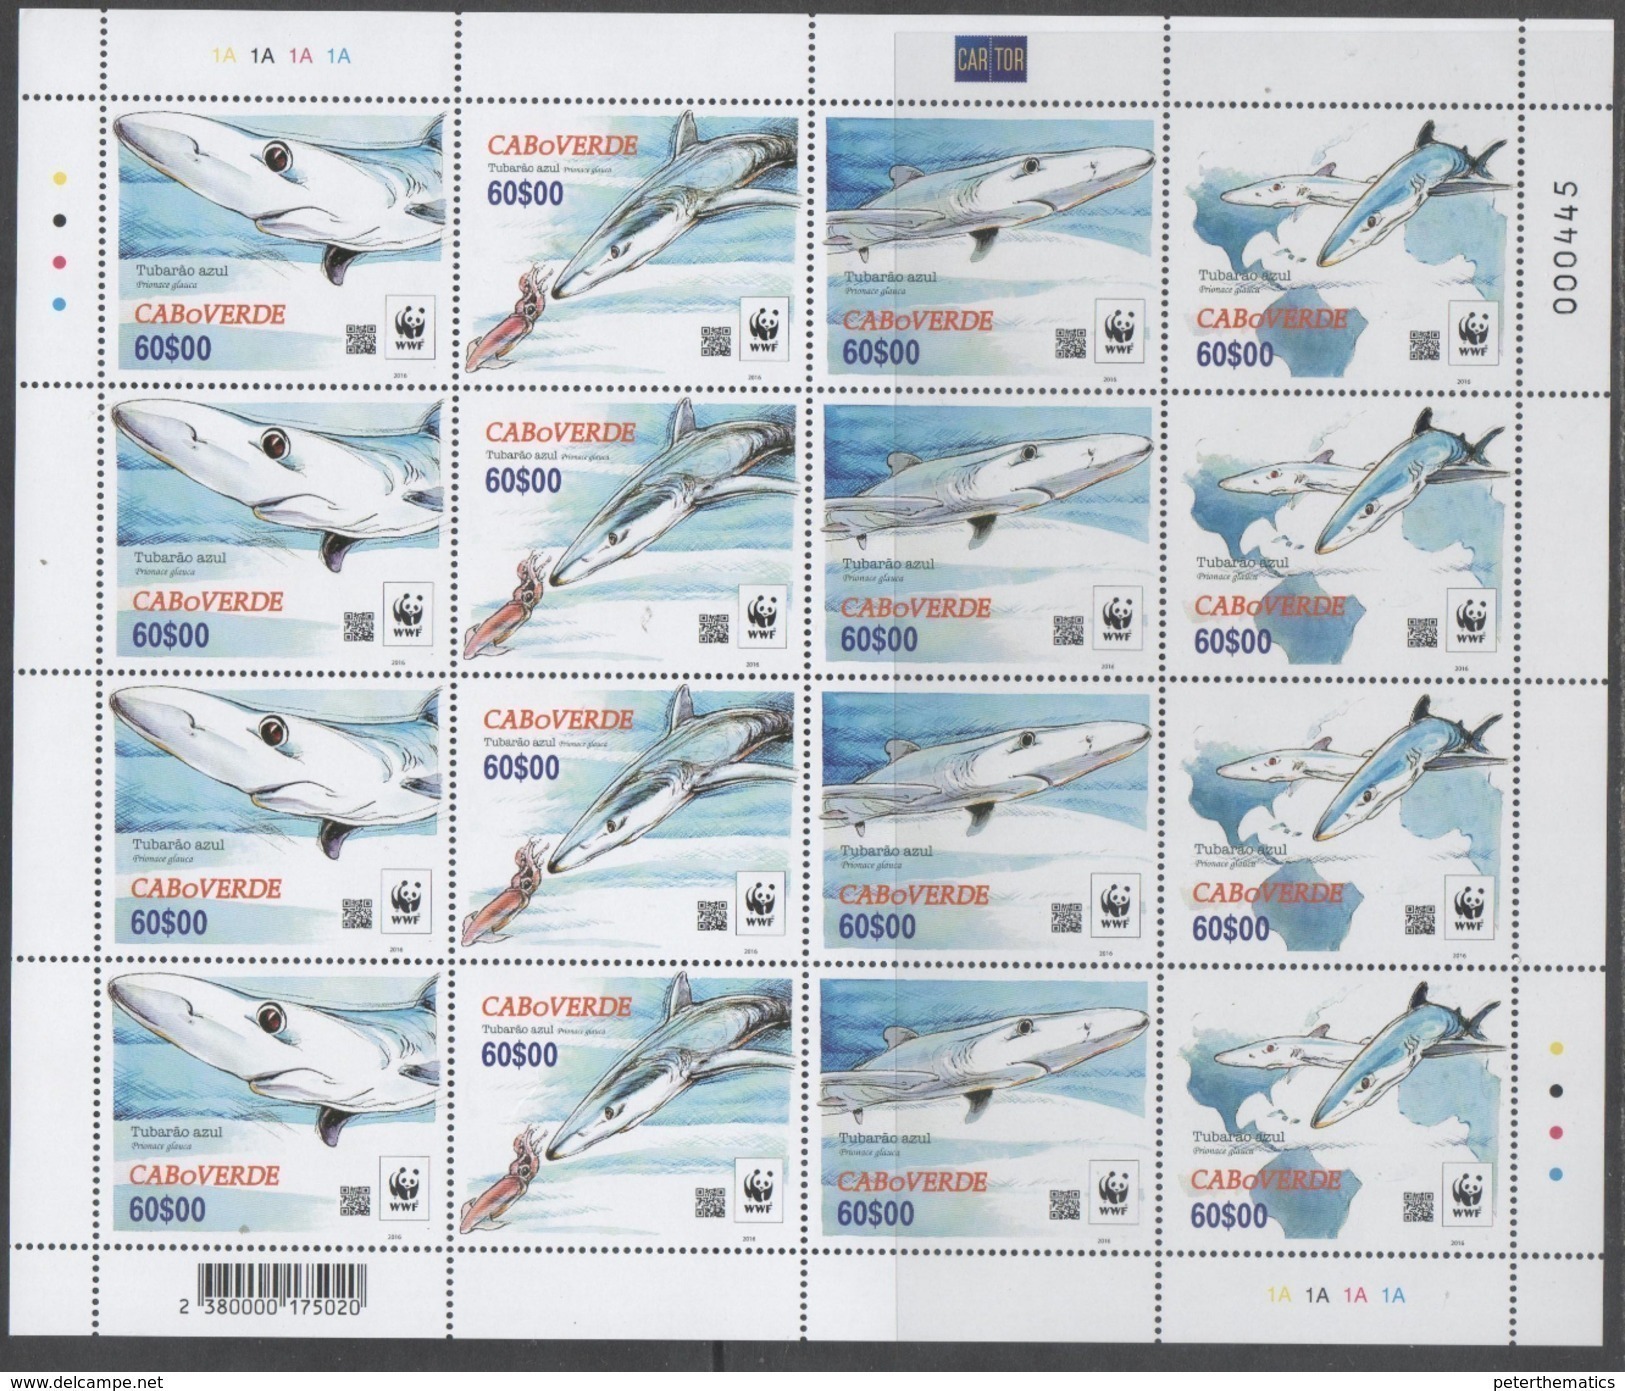 CAPE VERDE, 2016,MNH, WWF, SHARKS, SHEETLET OF 4 SETS - Unused Stamps